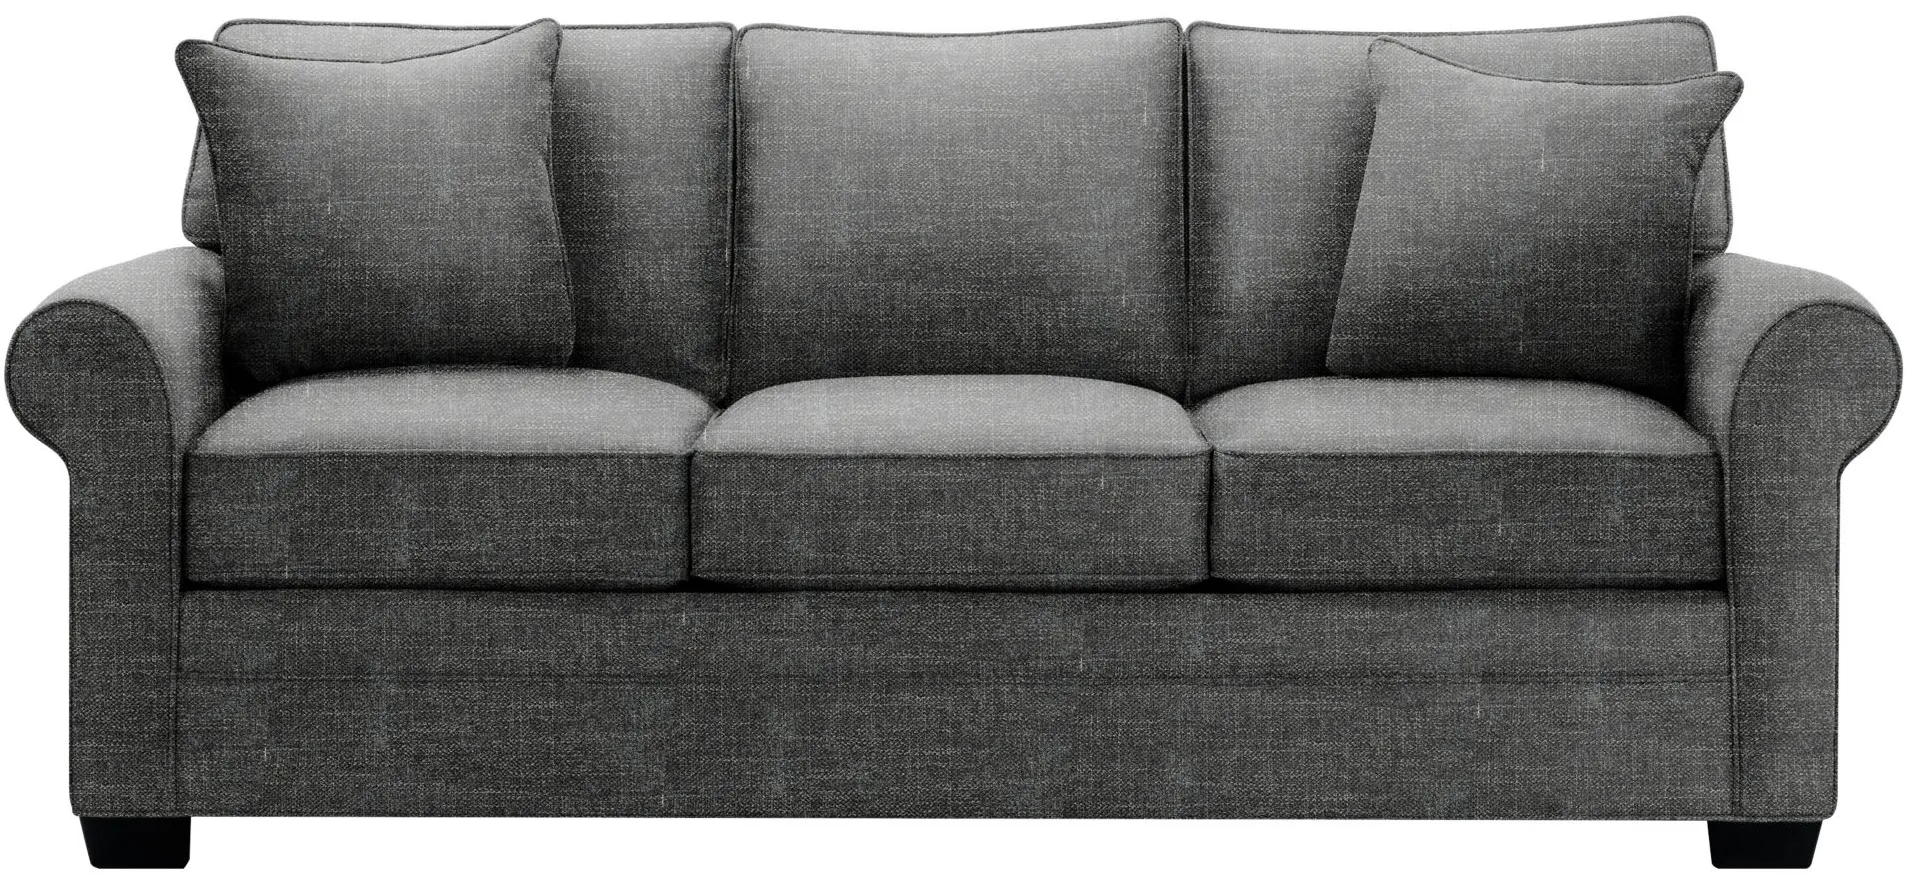 Glendora Queen Sleeper Sofa in Elliot Graphite by H.M. Richards